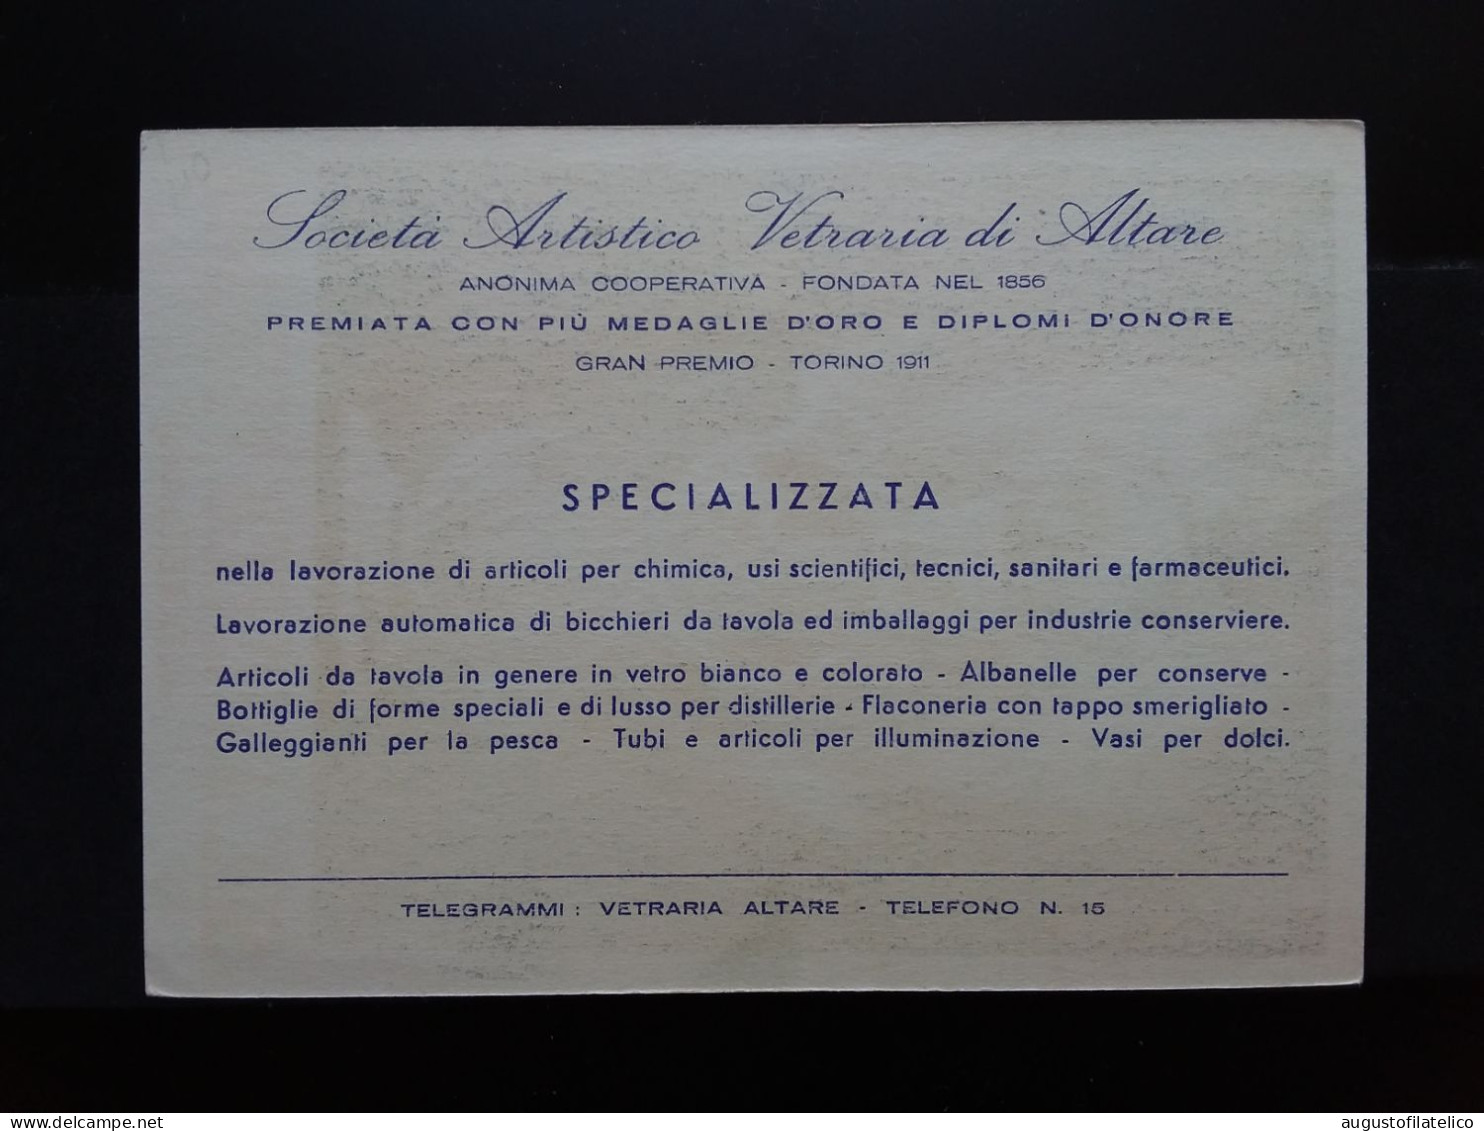 Periodo Regno - Società Vetraria - Altare (Savona) + Spese Postali - Werbepostkarten